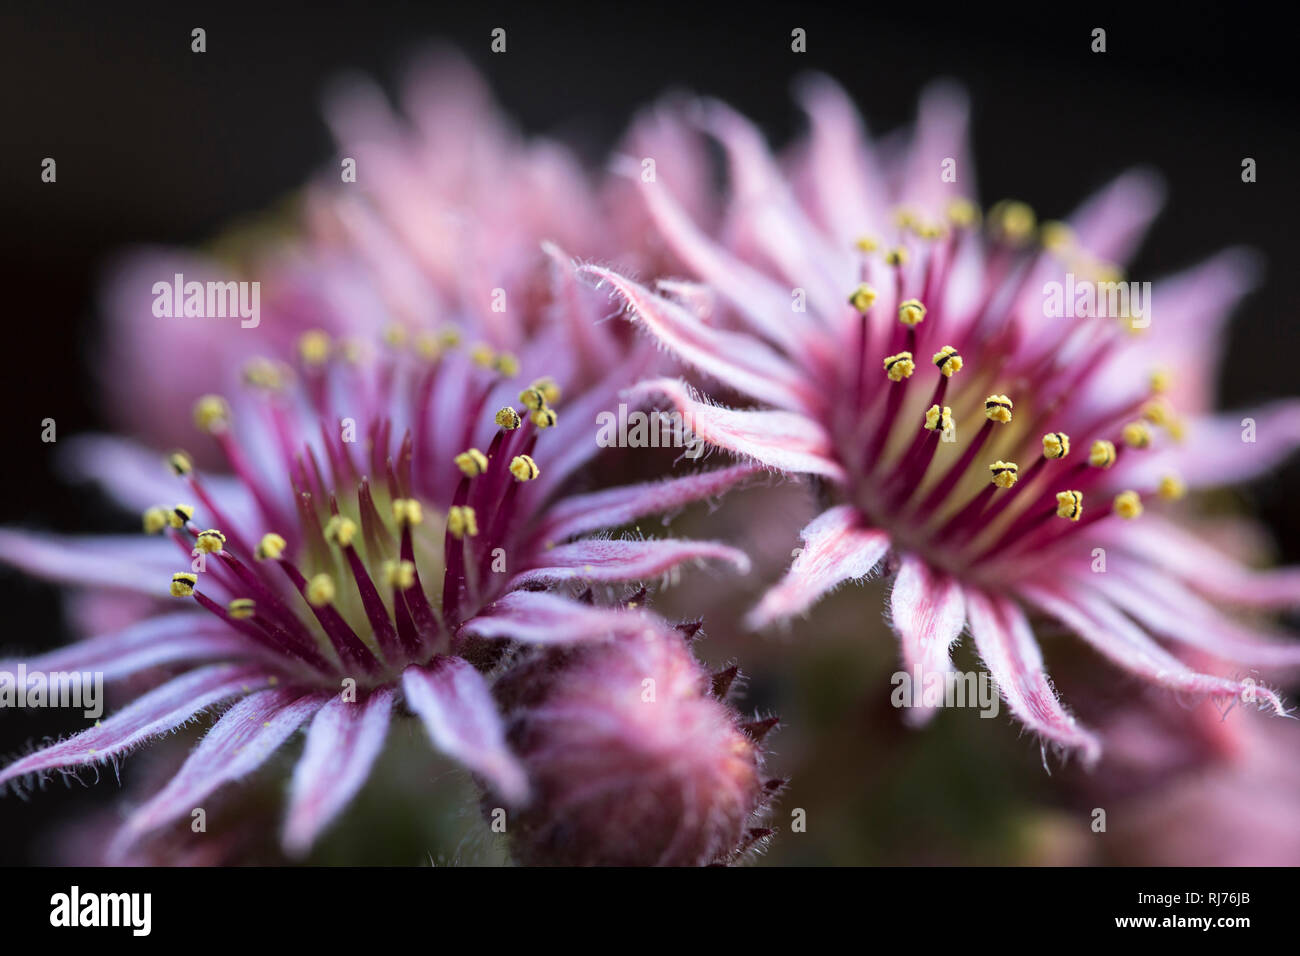 Nahaufnahme eines Hauswurz Blütenstandes, Sempervivum tectorum, Stock Photo